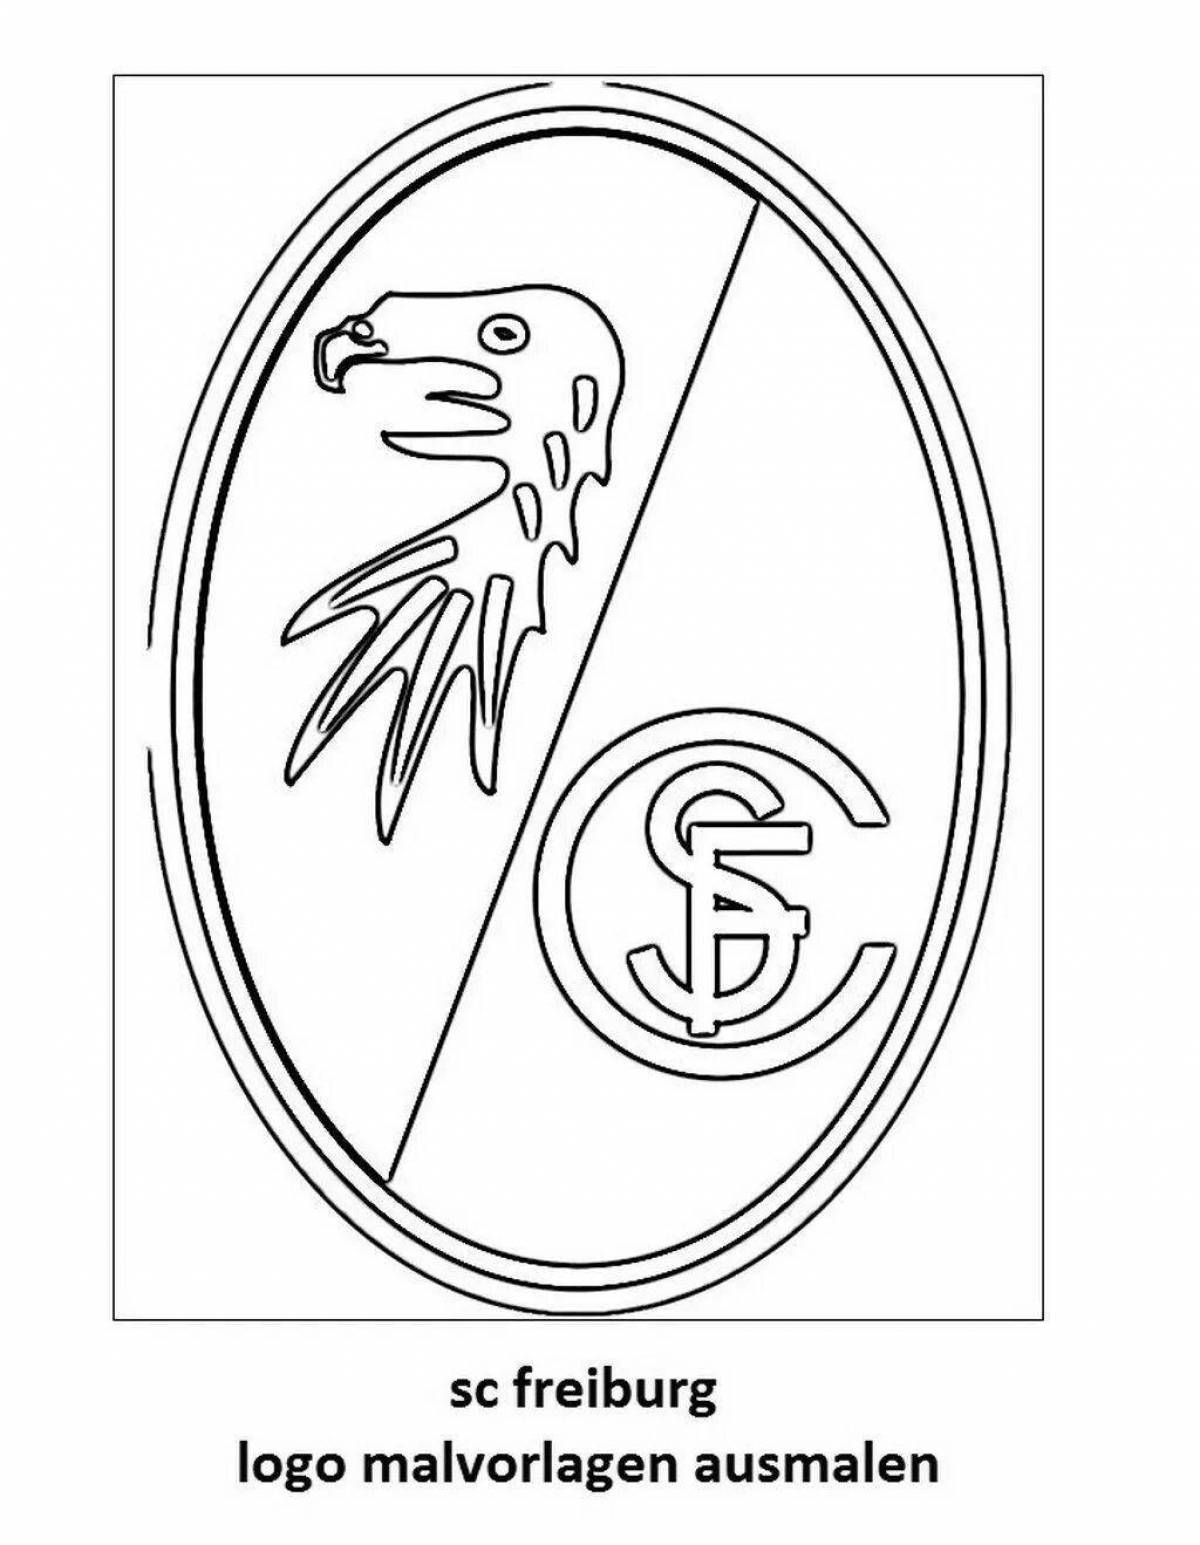 Гламурная раскраска с логотипами футбольных клубов